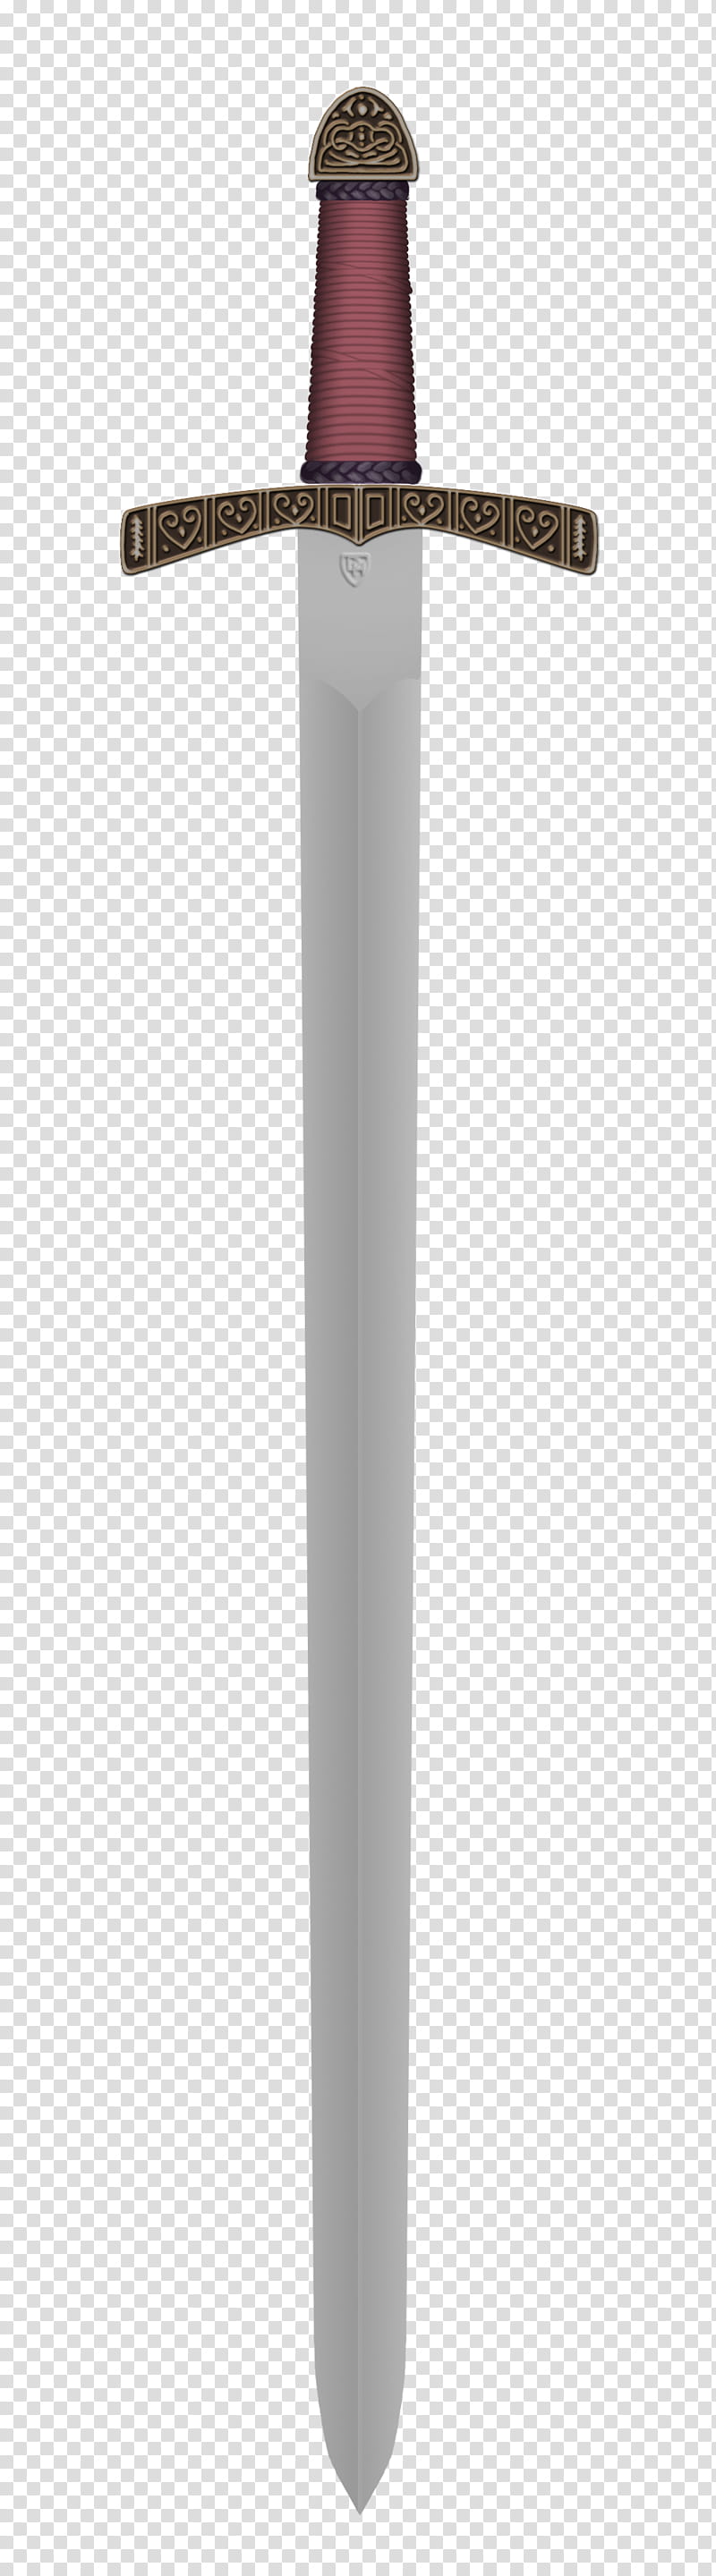 Bowen Sword, purple sword transparent background PNG clipart